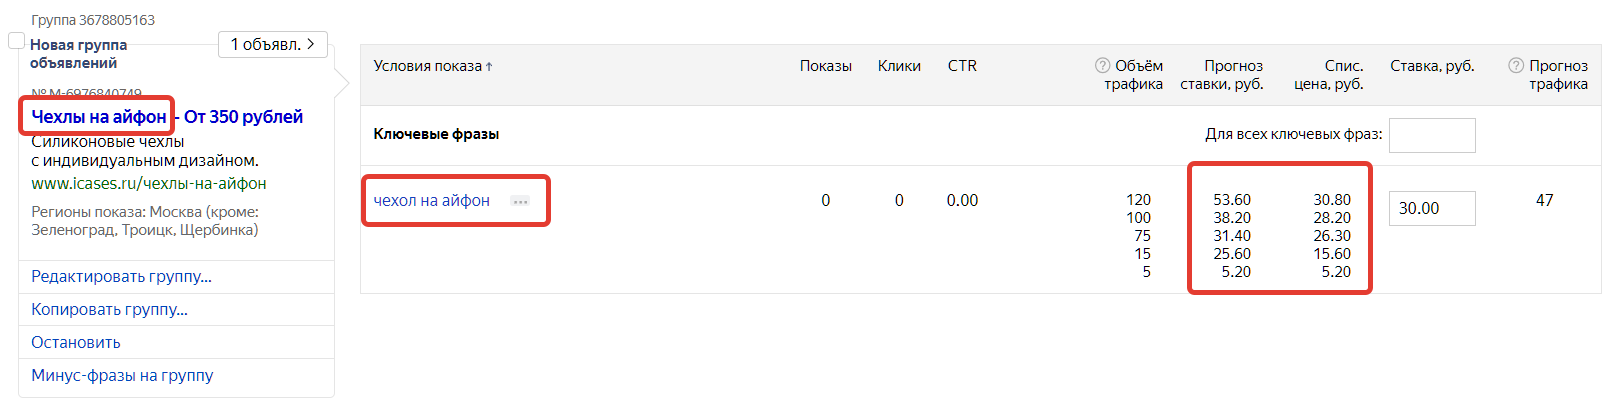 Пример прогнозной цены клика для ключевой фразы "чехол на айфон" в Яндекс.Директе